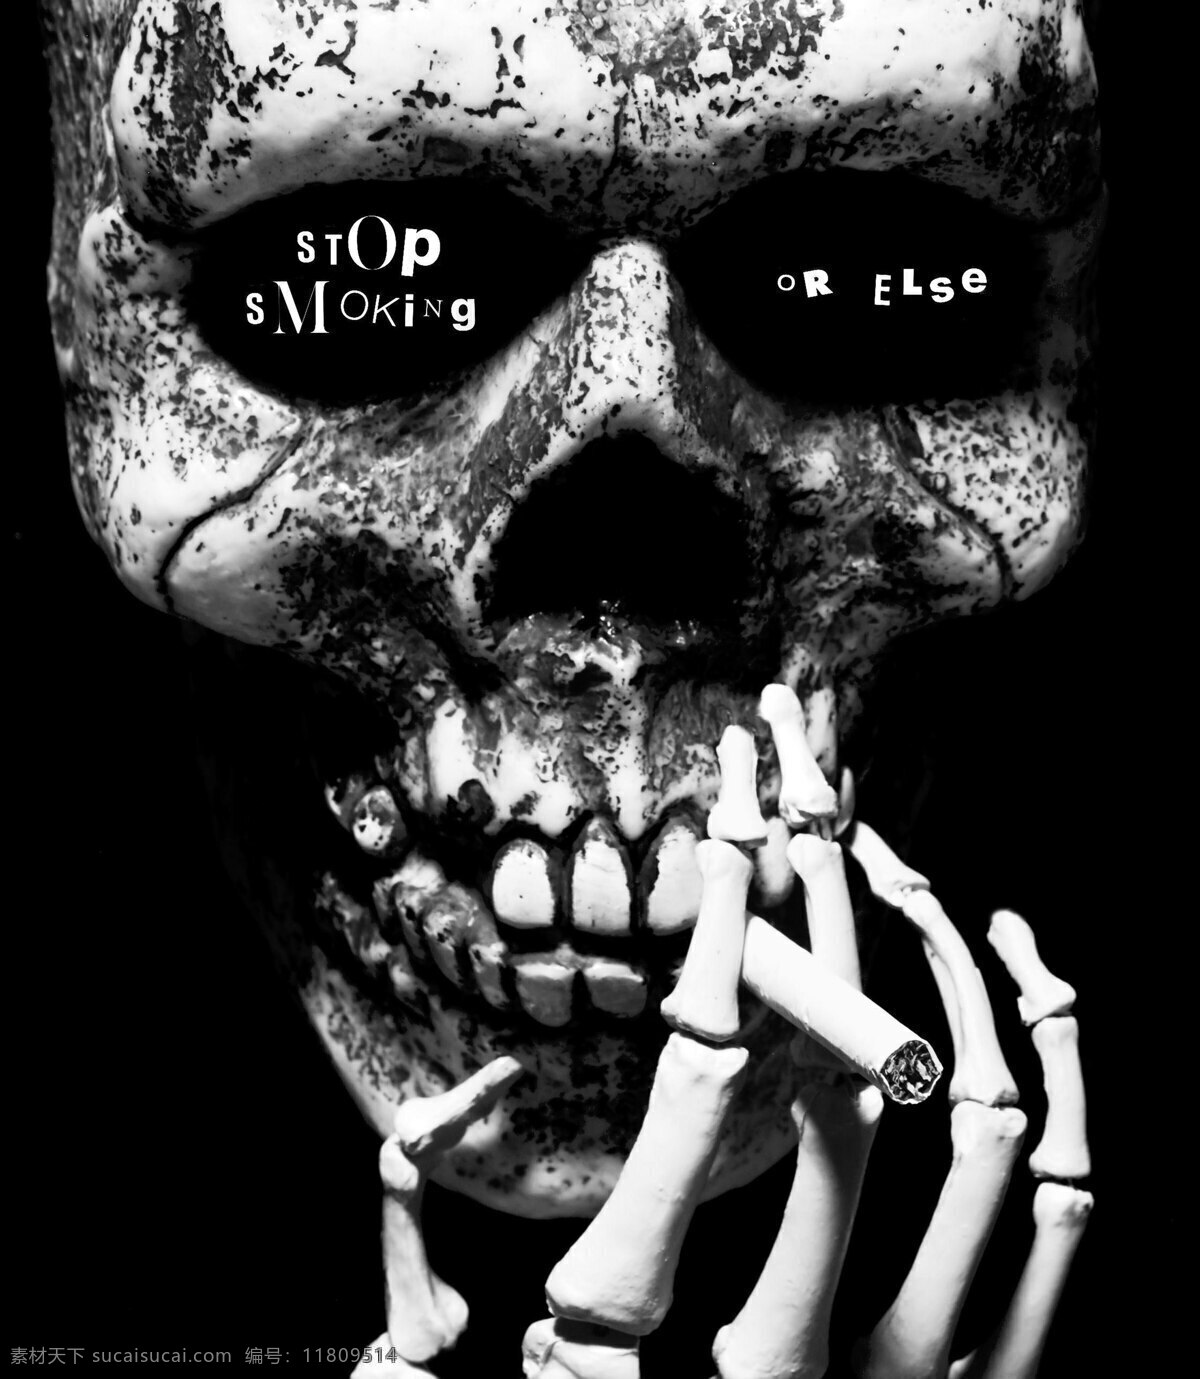 创意 骷髅 头 吸烟 禁烟 海报 黑白 骷髅头